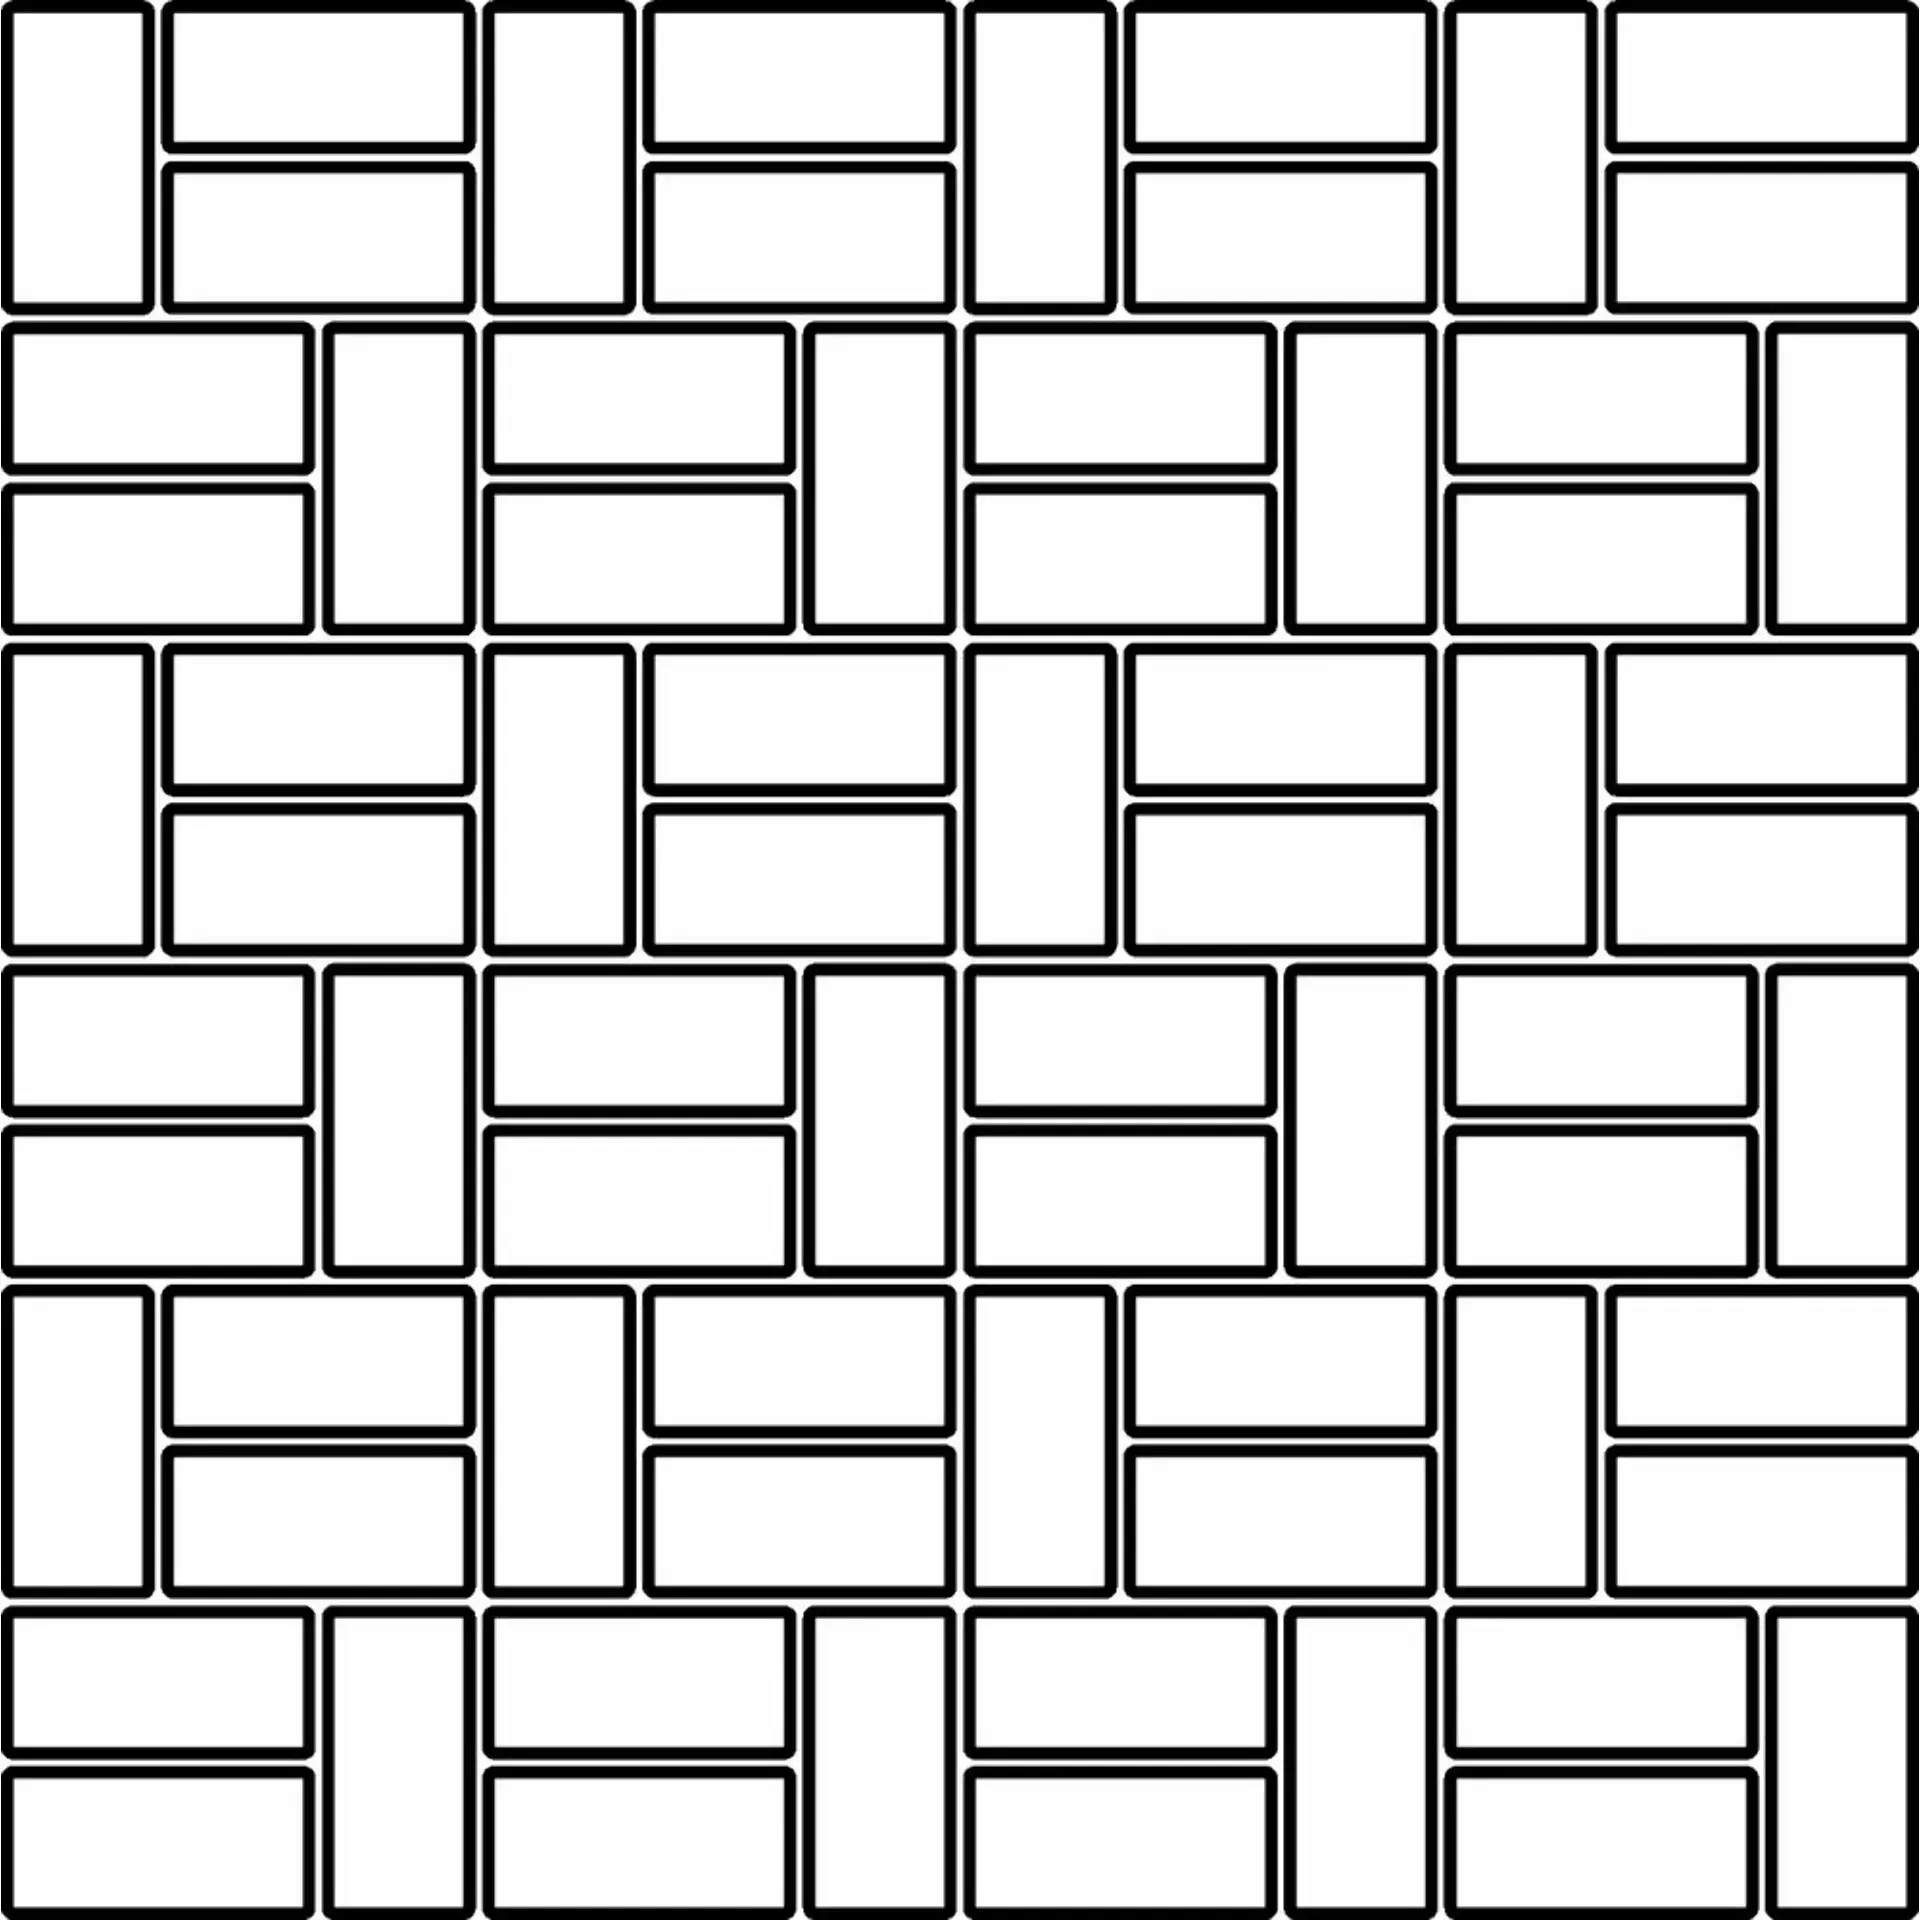 Coem Reverso Avorio Patinato Mosaic Bricks 2x5 RV1MS3P 30x30cm rectified